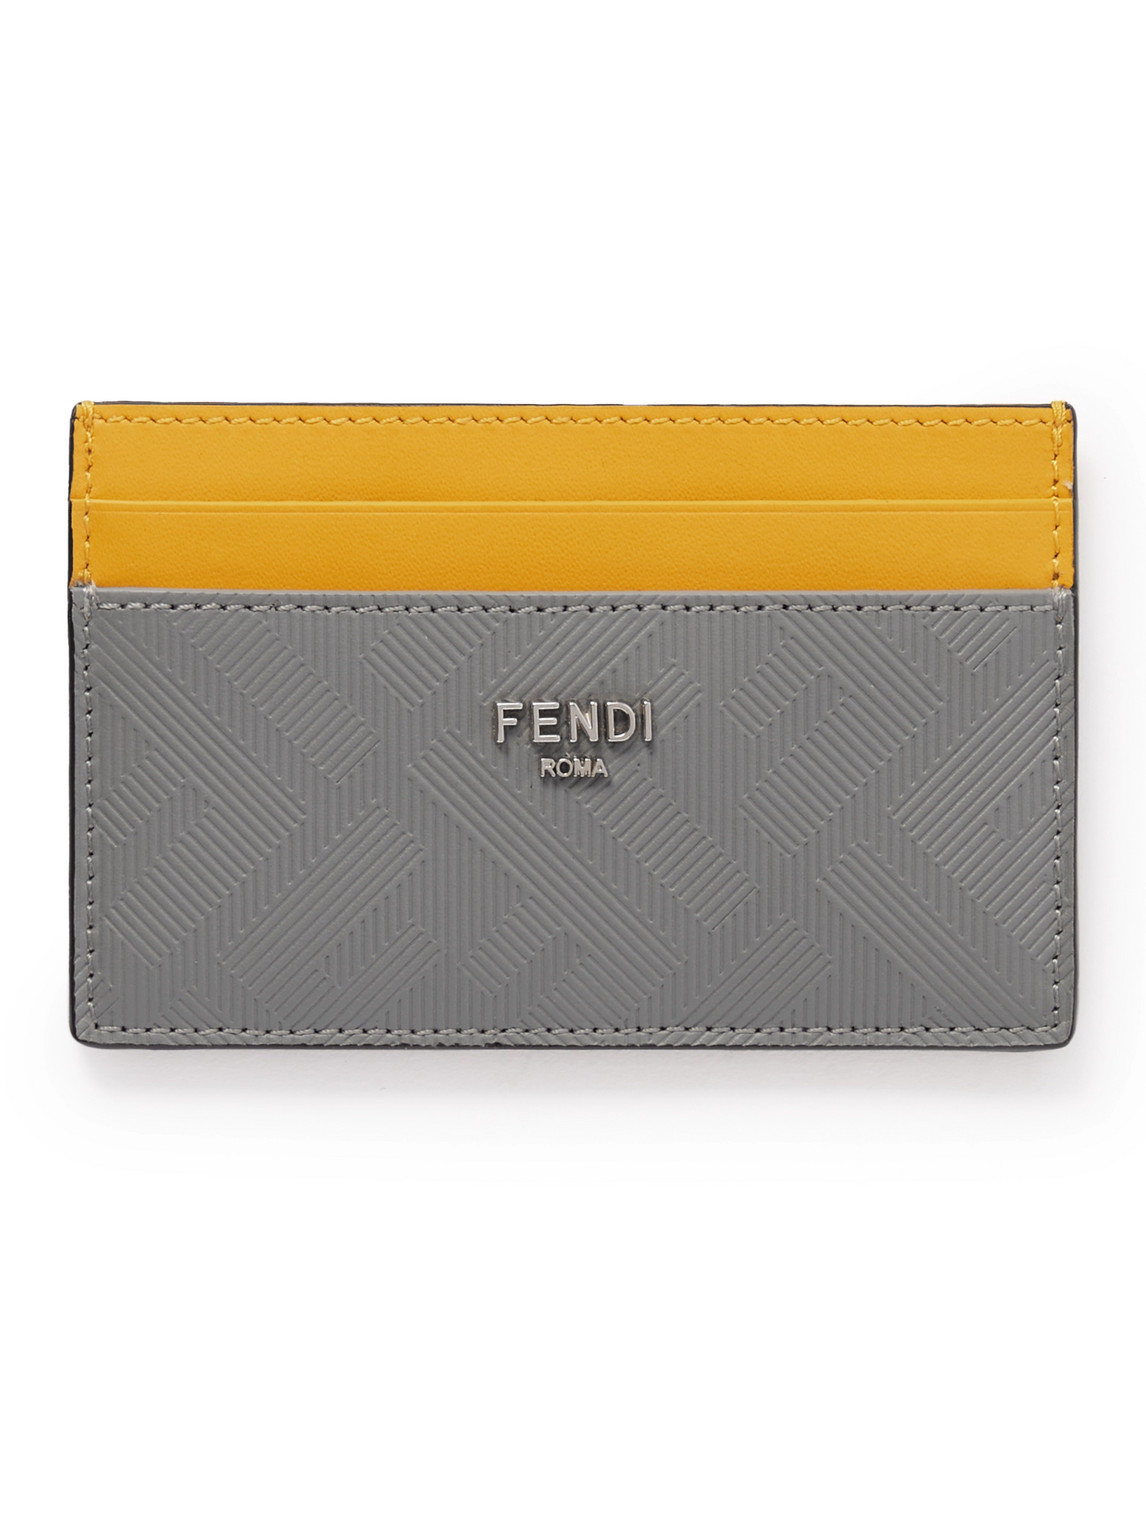 Fendi - Logo-Debossed Leather Cardholder - Men - Gray